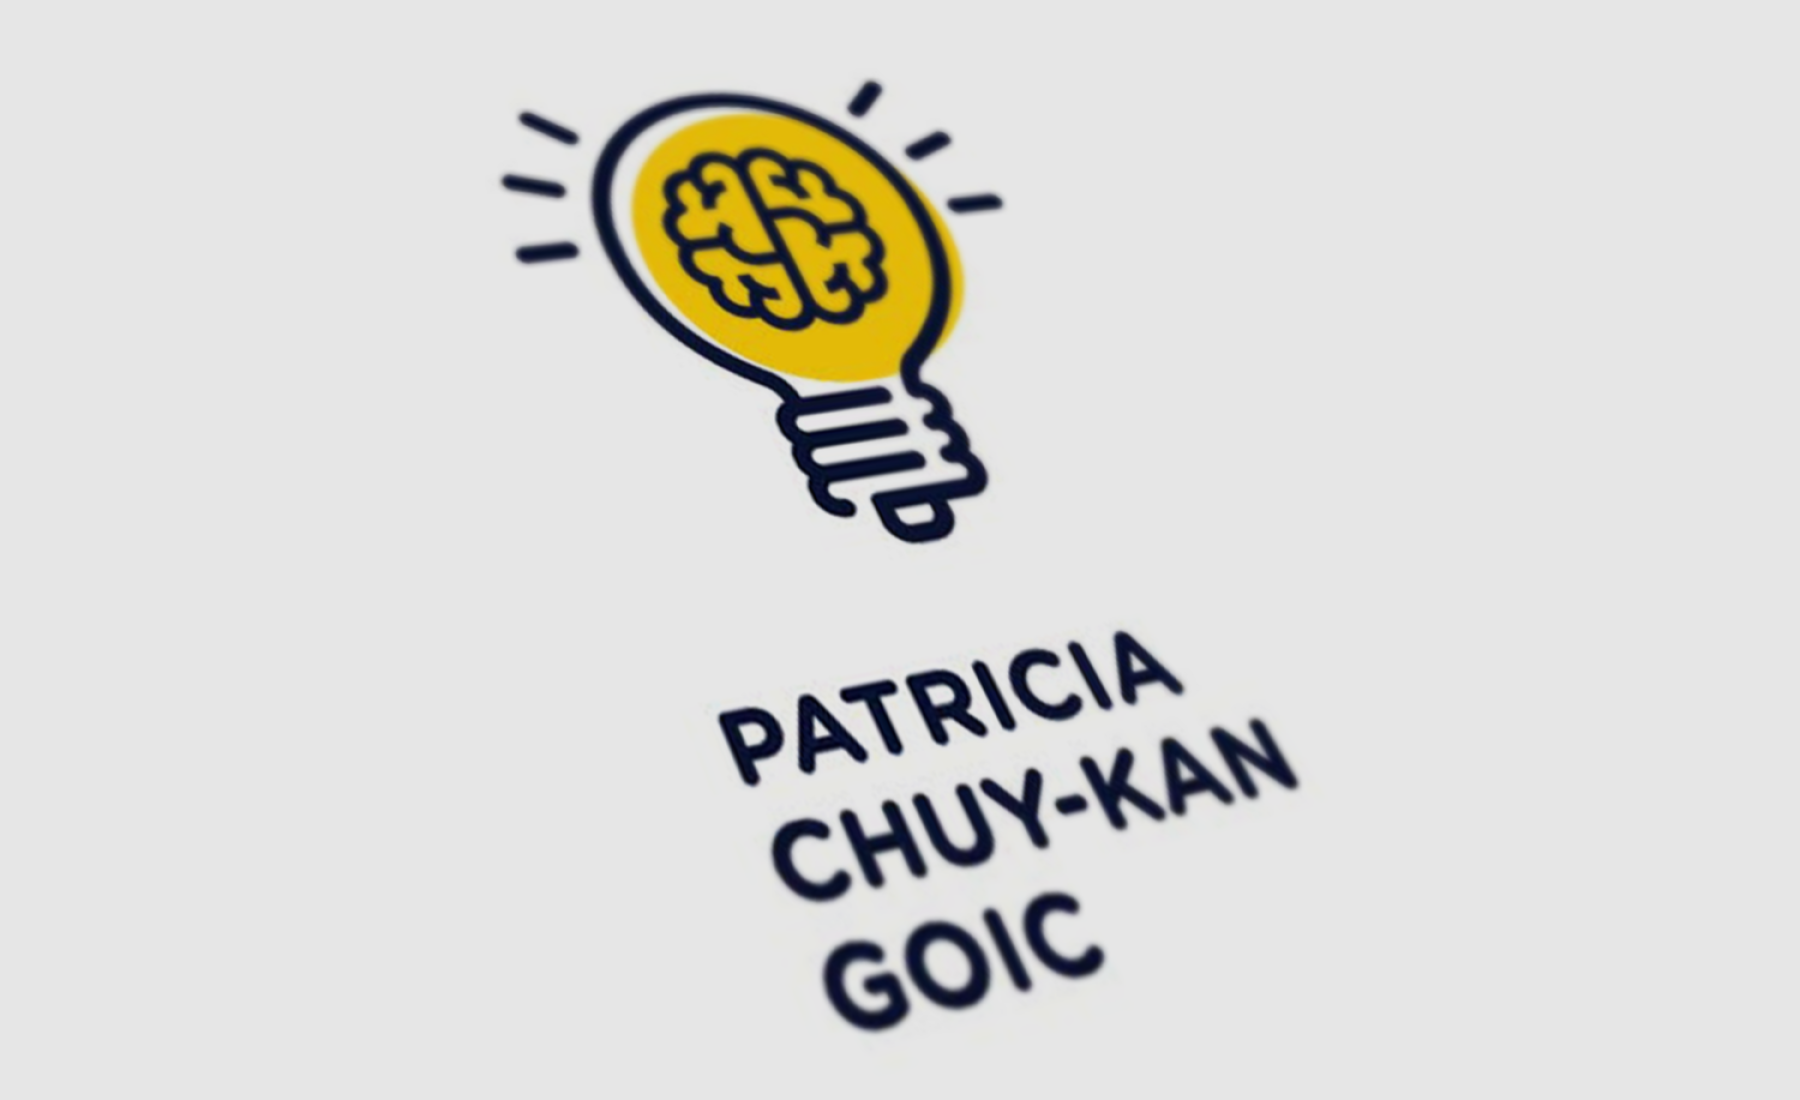 Patricia Chuy